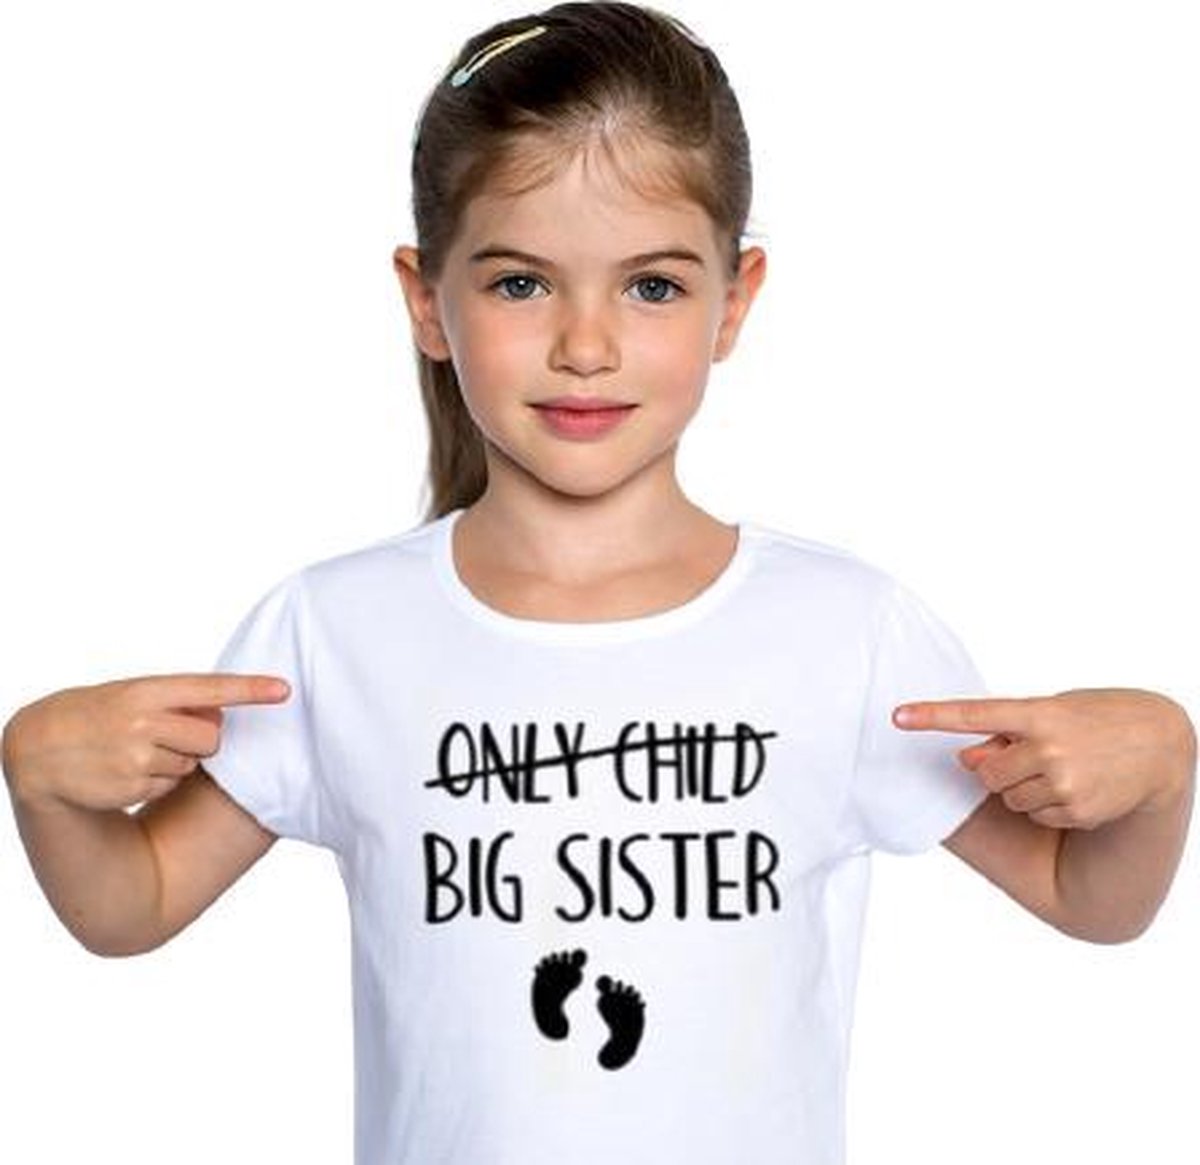 Only child BIG SISTER T-shirt | Grote zus shirt wit | Leeftijd ca. 3 tot 4 jaar